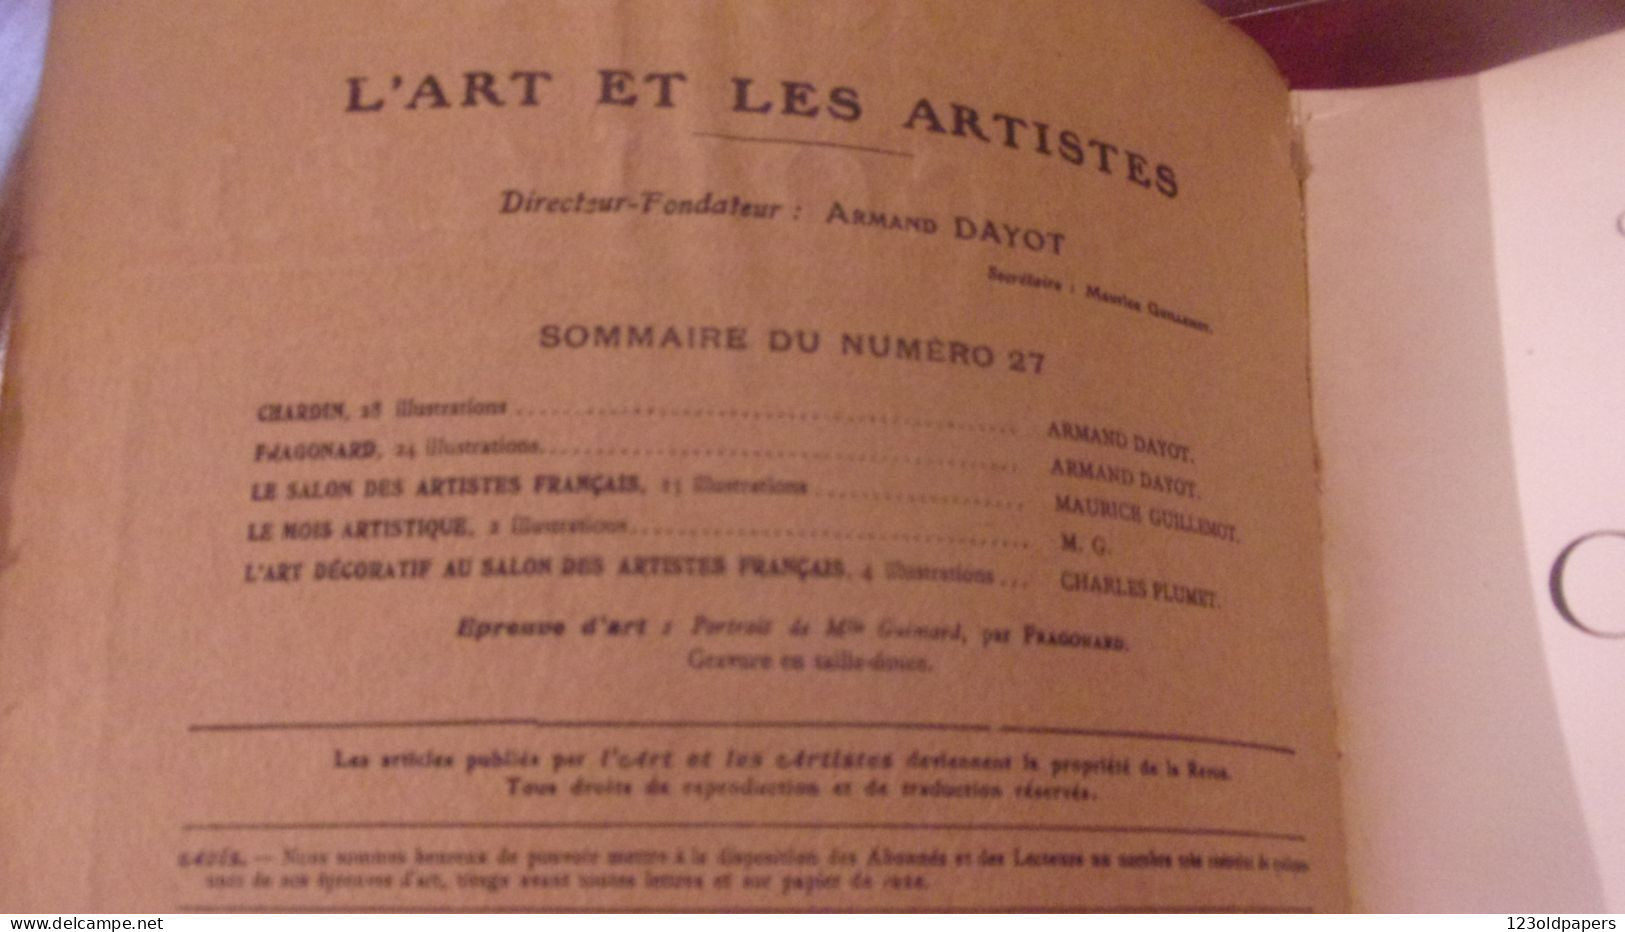 Chardin & Fragonard Numéro Spécial De L'art & Les Artistes N°27 3e Année Juin 1907 - Arte